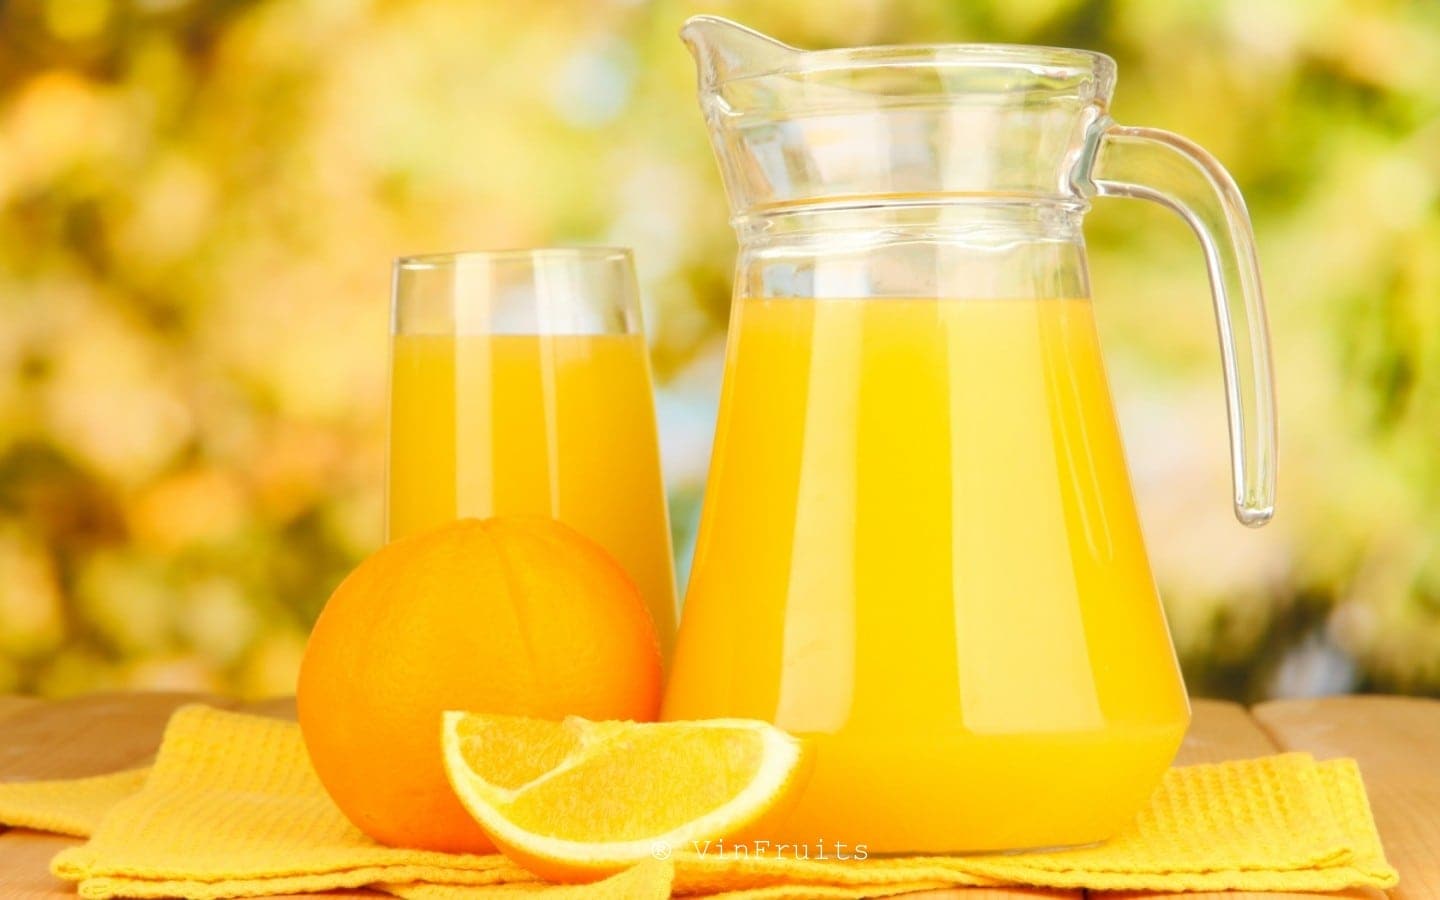   Nước cam ép có thể làm tăng đường huyết, nguy cơ tiểu đường rất cao  